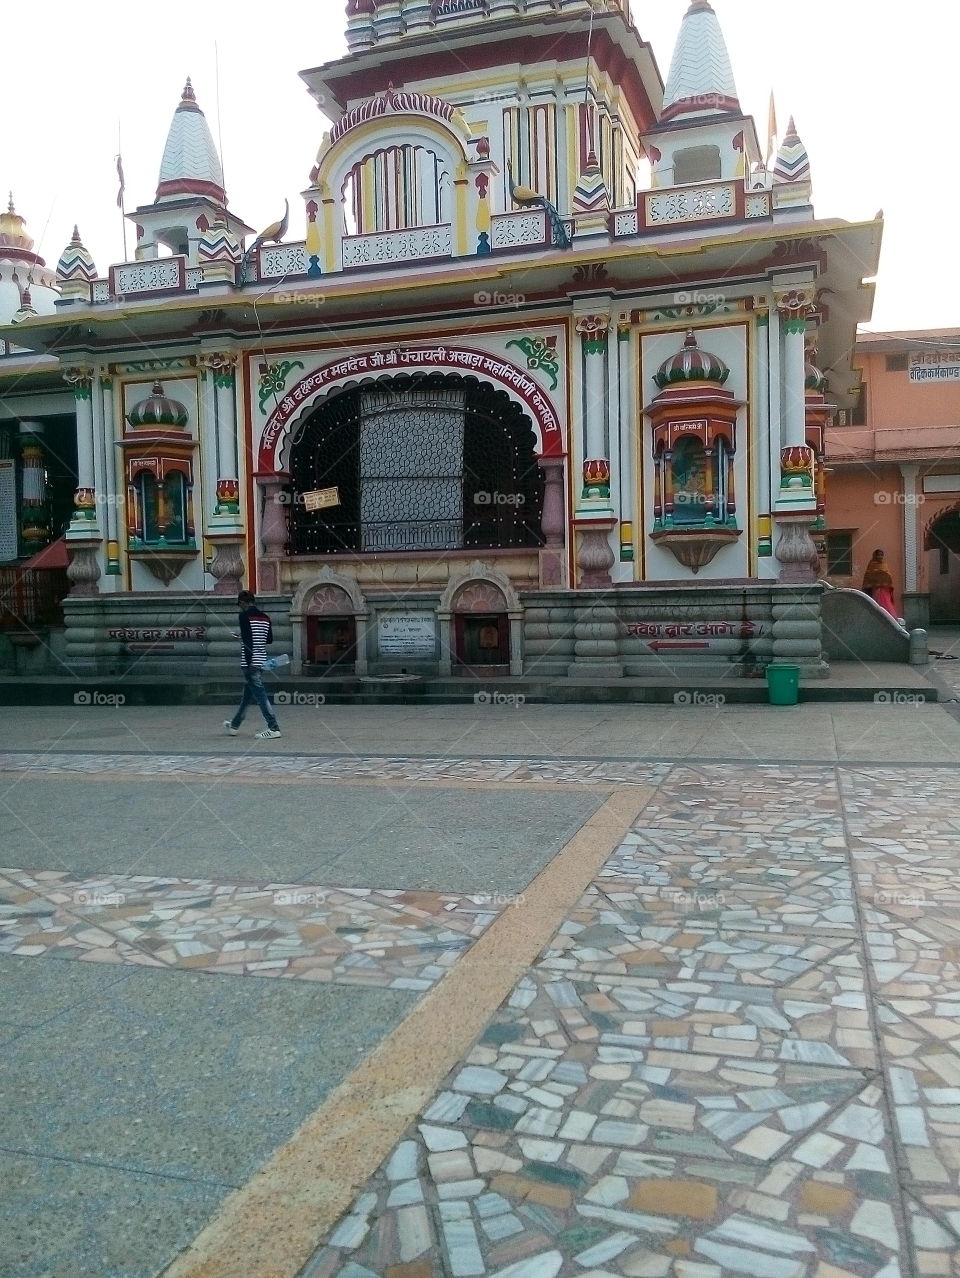 #Kankhal #Daksh #Temple